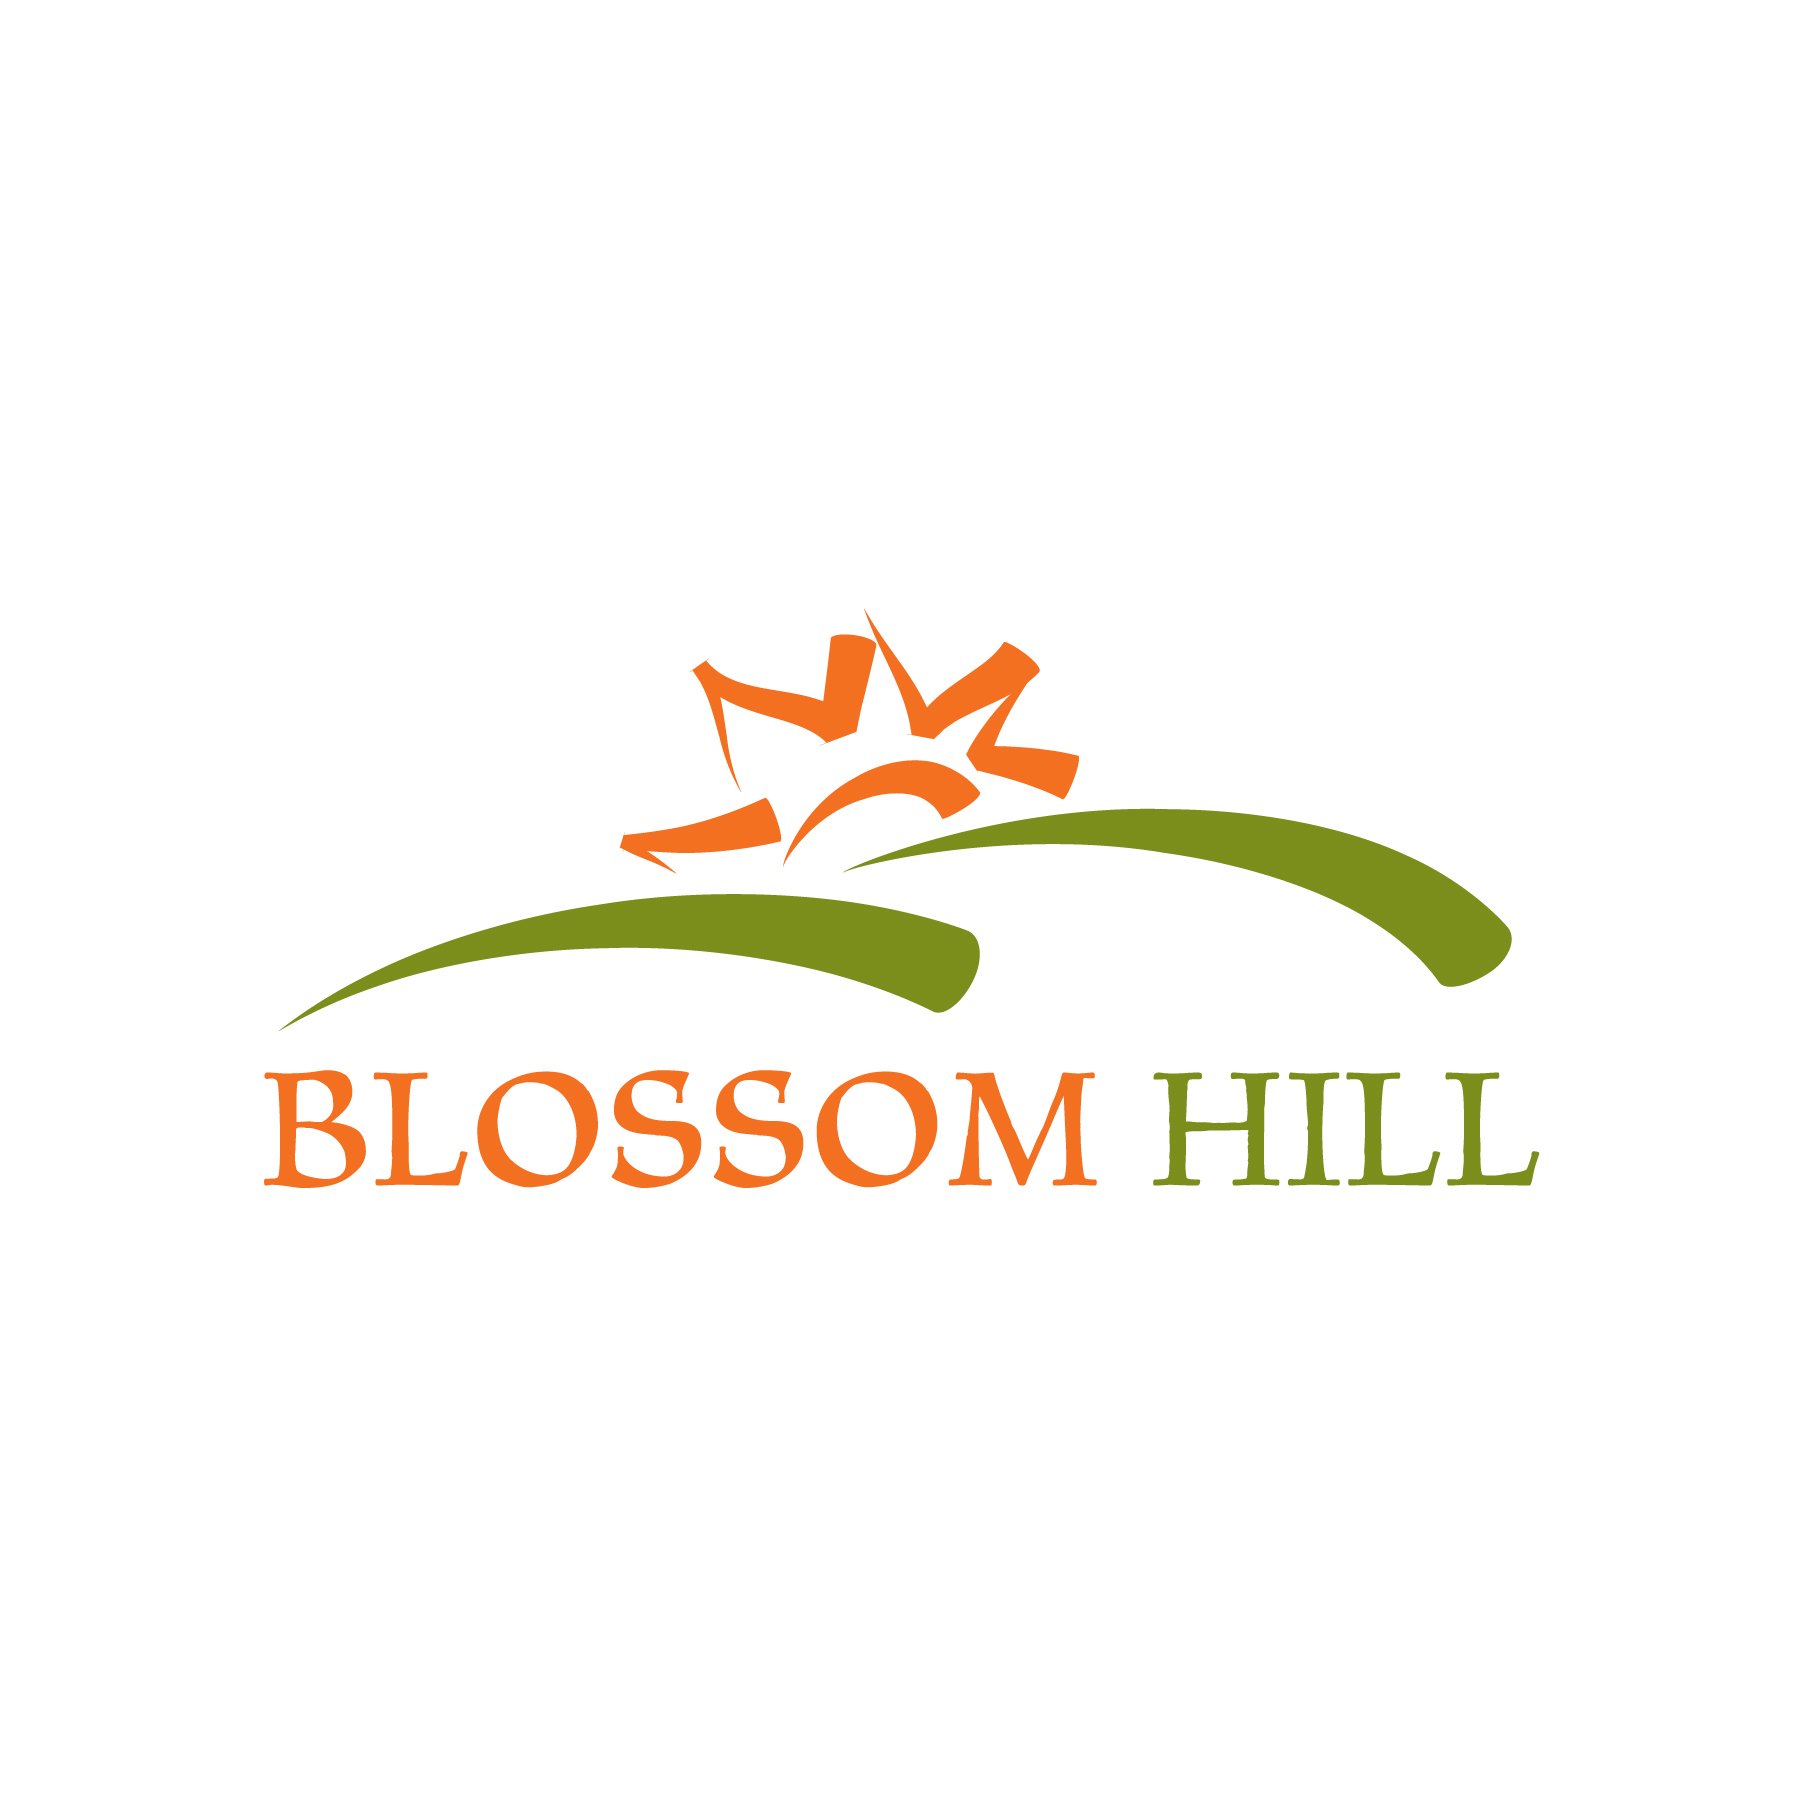 Portfolio_Logos_Blossom Hill.jpg